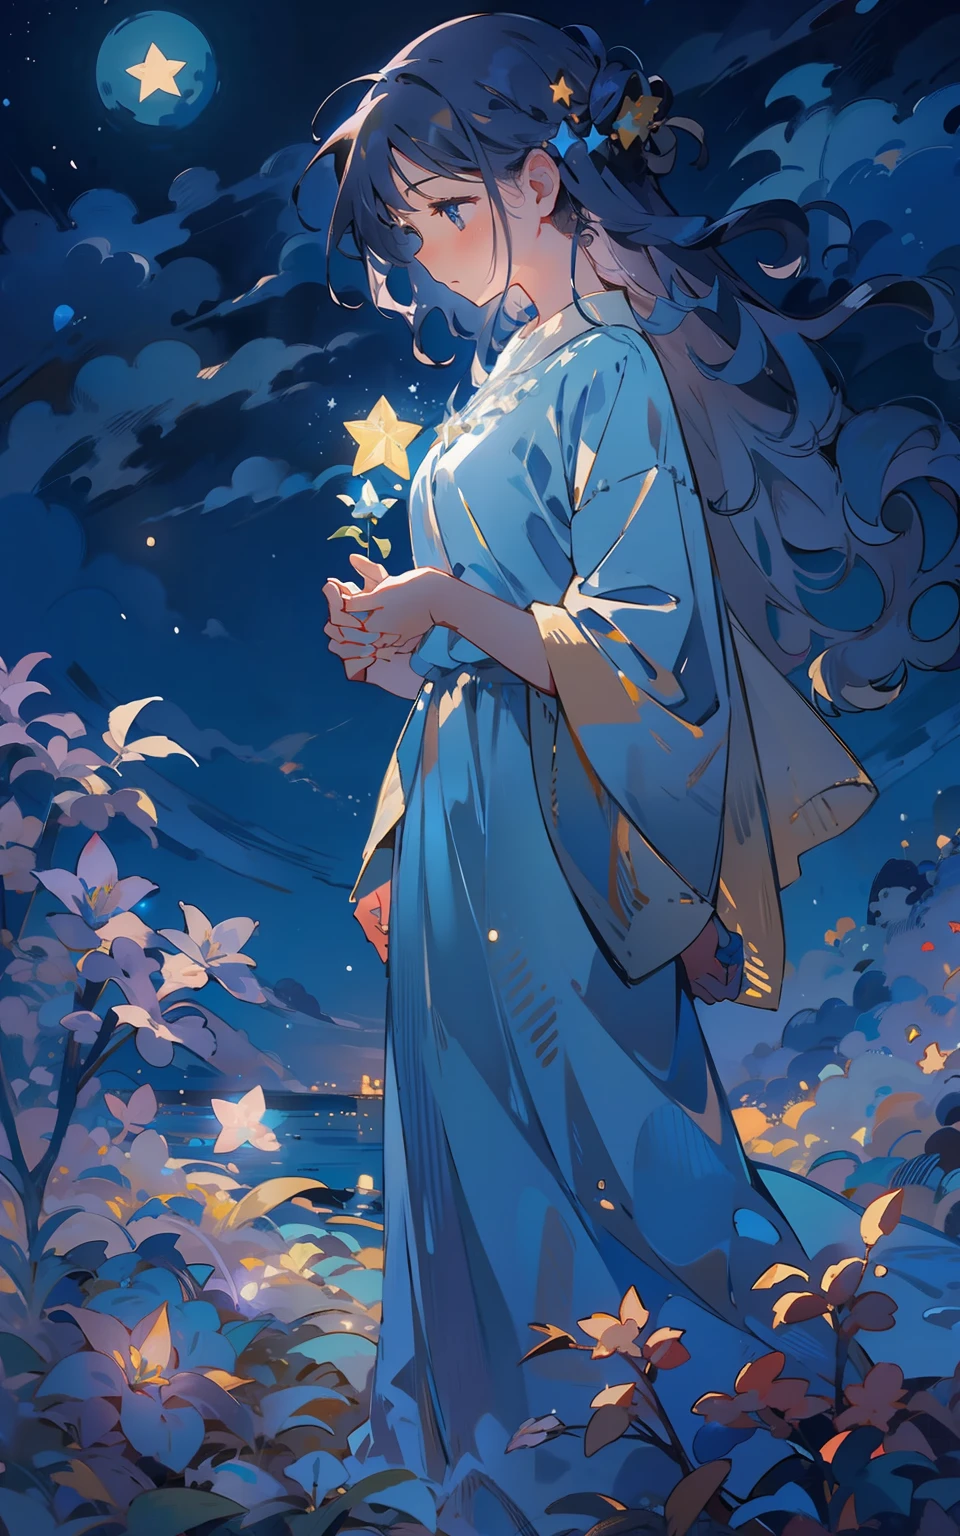 8. 藍色月夜：婦女們站在山上，被柔和的月光照亮。夜空點綴著無數的星星，營造出一種寧靜和驚奇的感覺。她深吸了一口气，感受夜晚的寧靜。